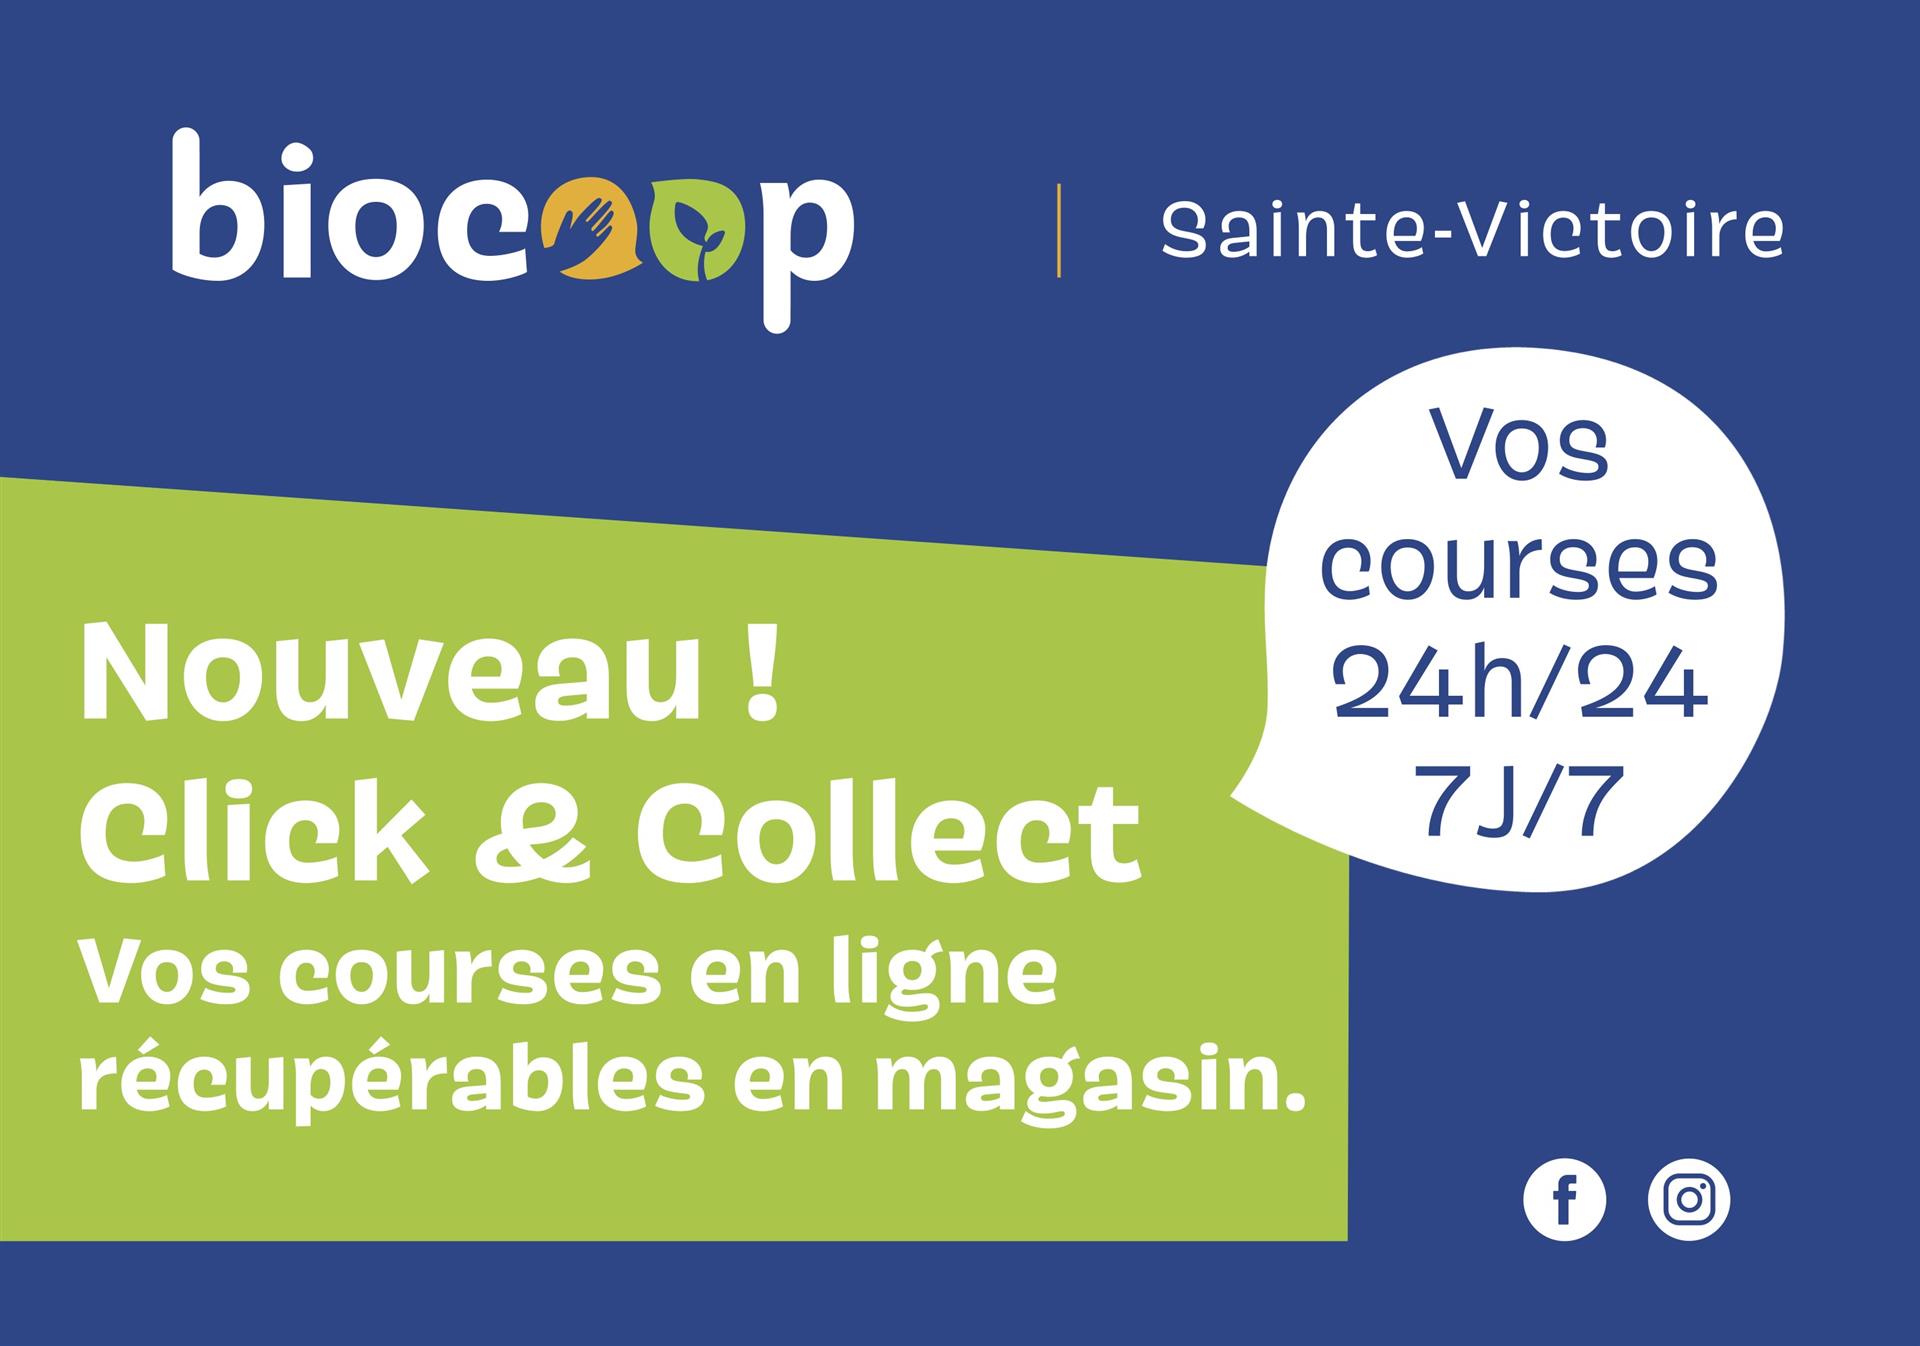 Vos courses 24h/24 et 7j/7, c'est désormais possible, c'est le Click&Collect dans votre BIOCOOP Sainte-Victoire !!!